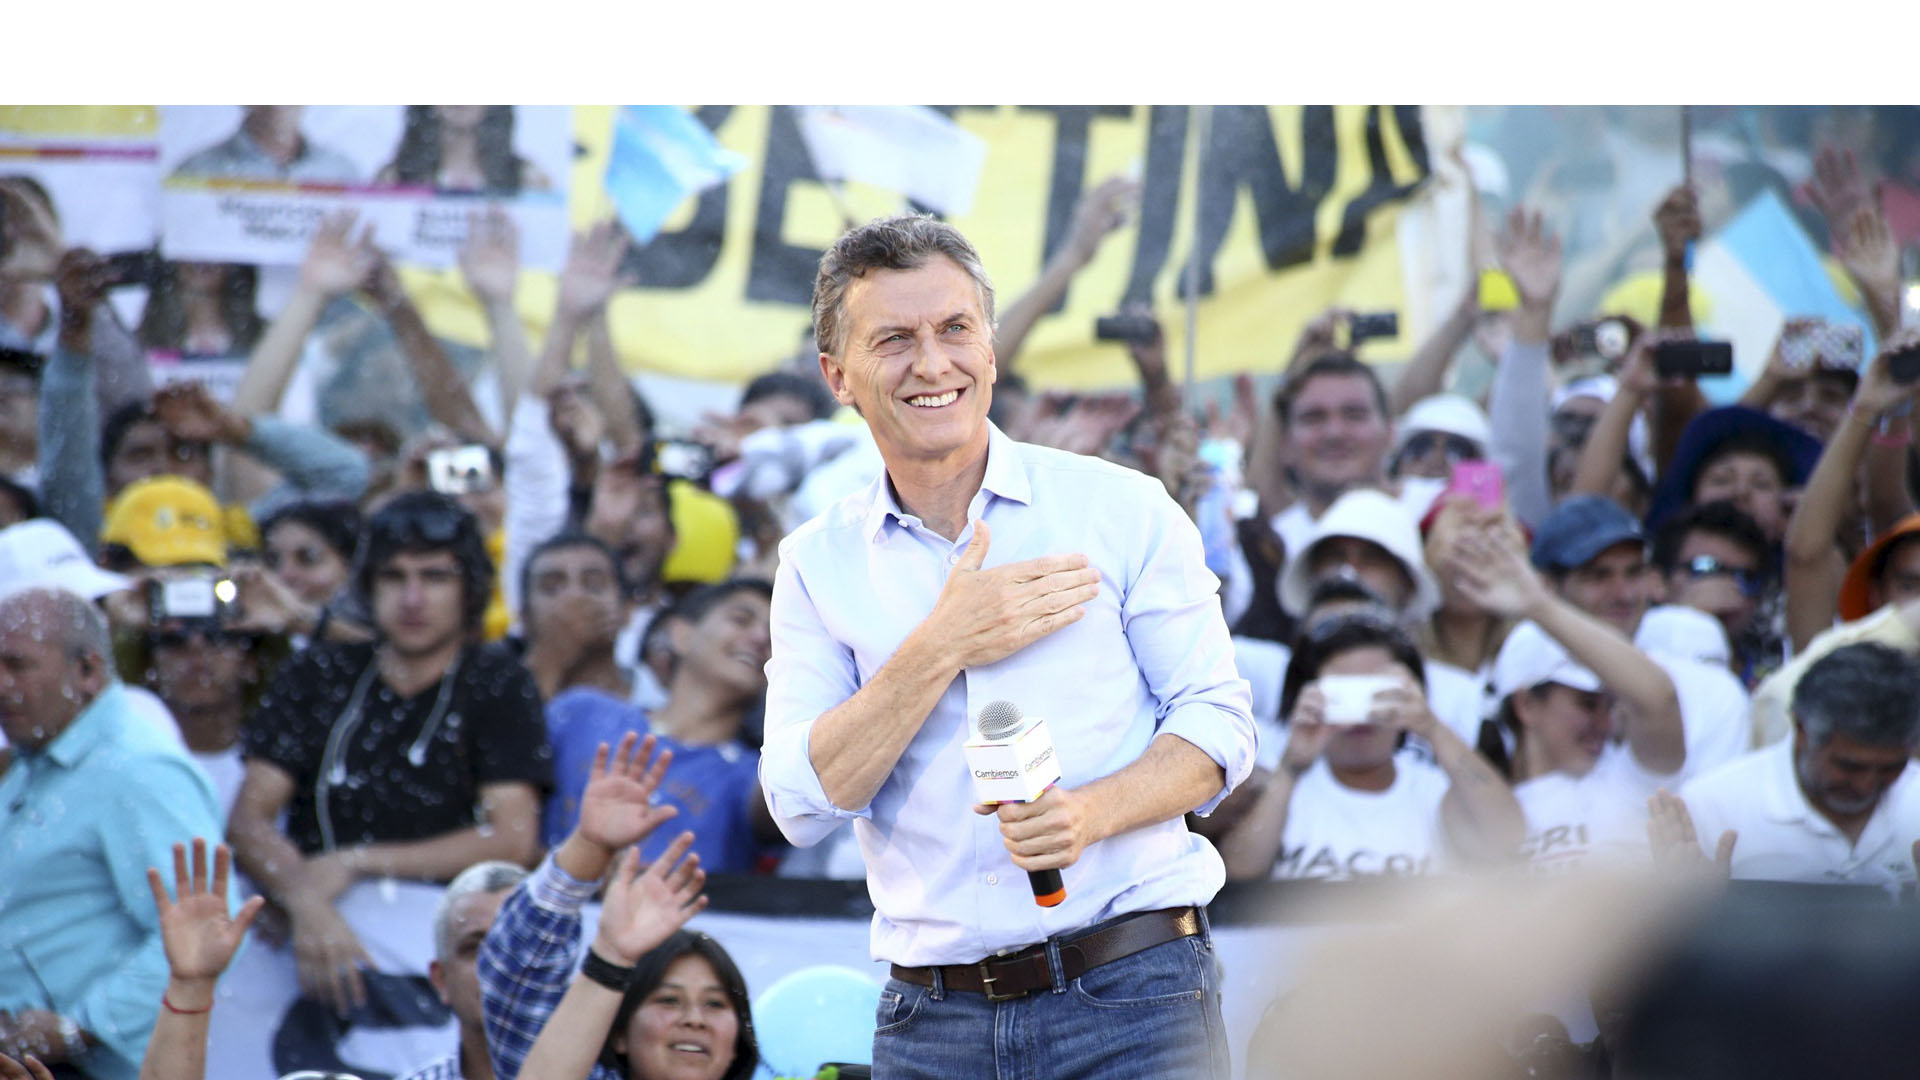 Mauricio Macri del frente opositor Cambiemos ganó con un 53,19% de los votos